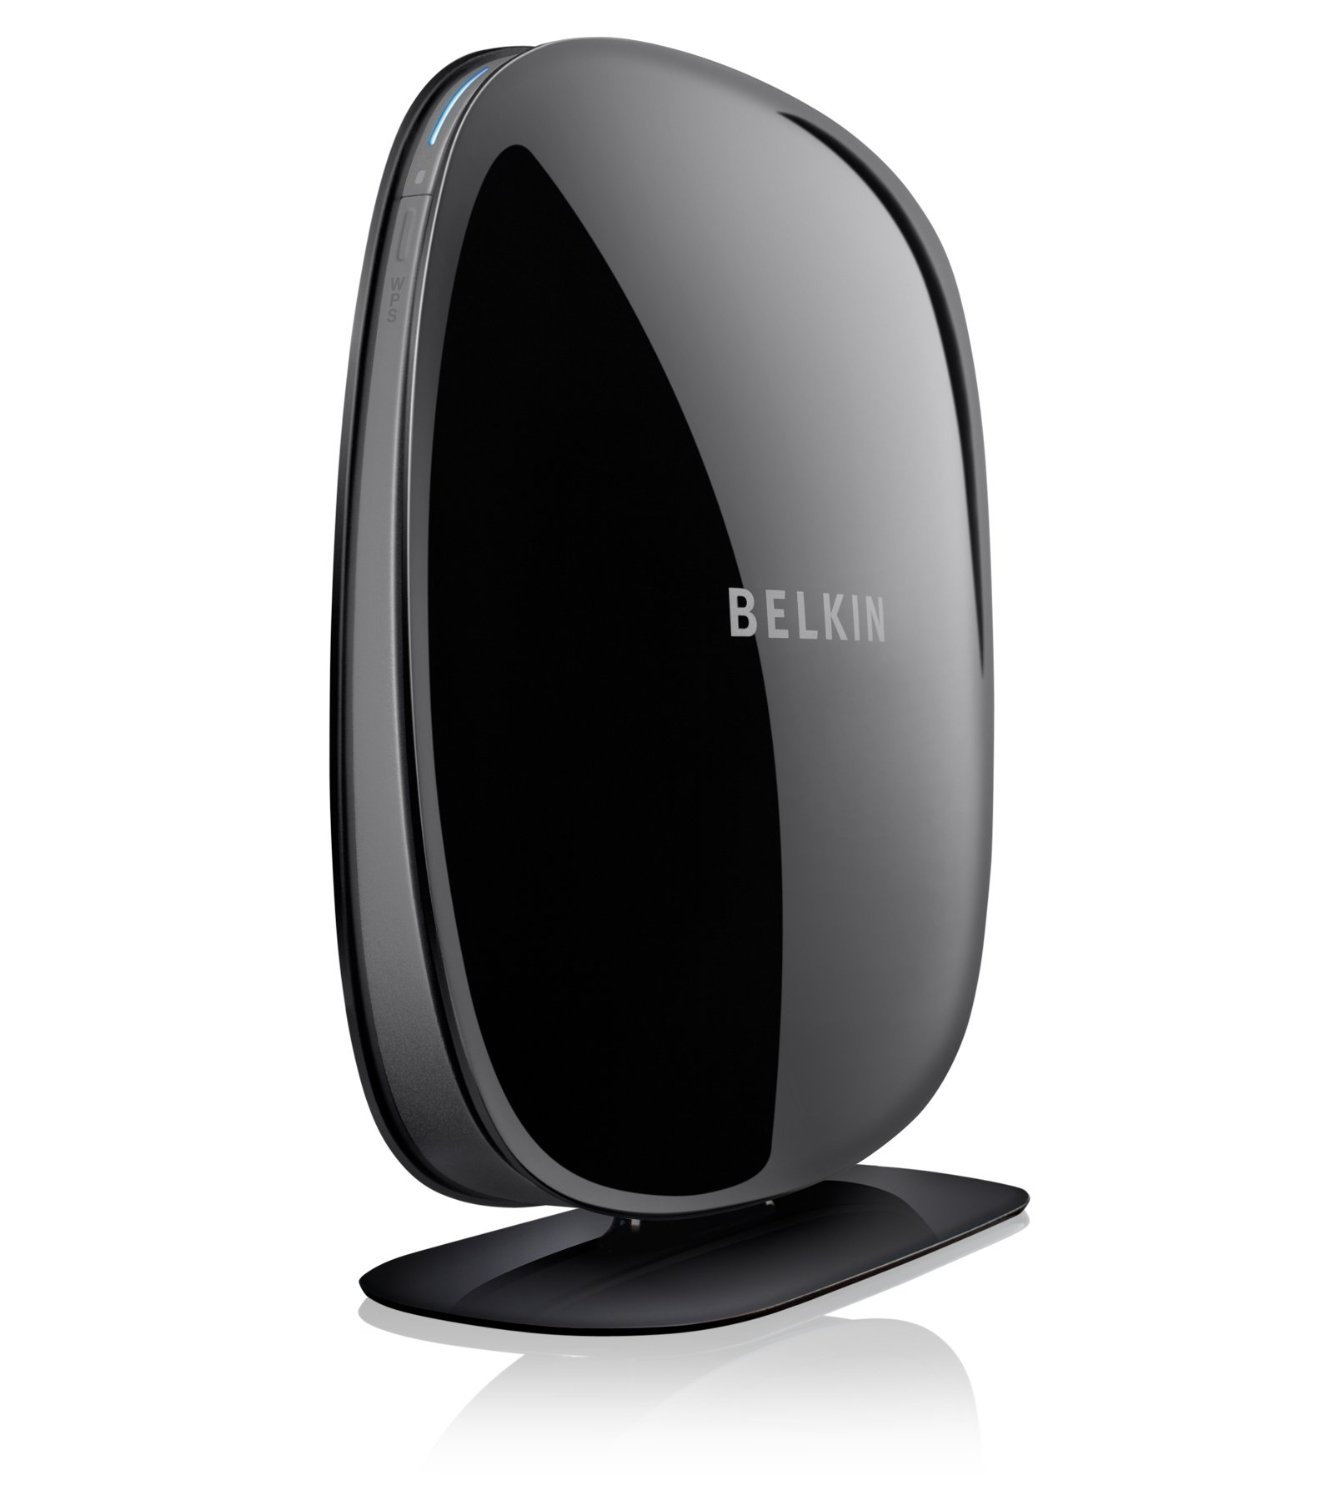 Belkin N450 Dual-band N+ F9K1105